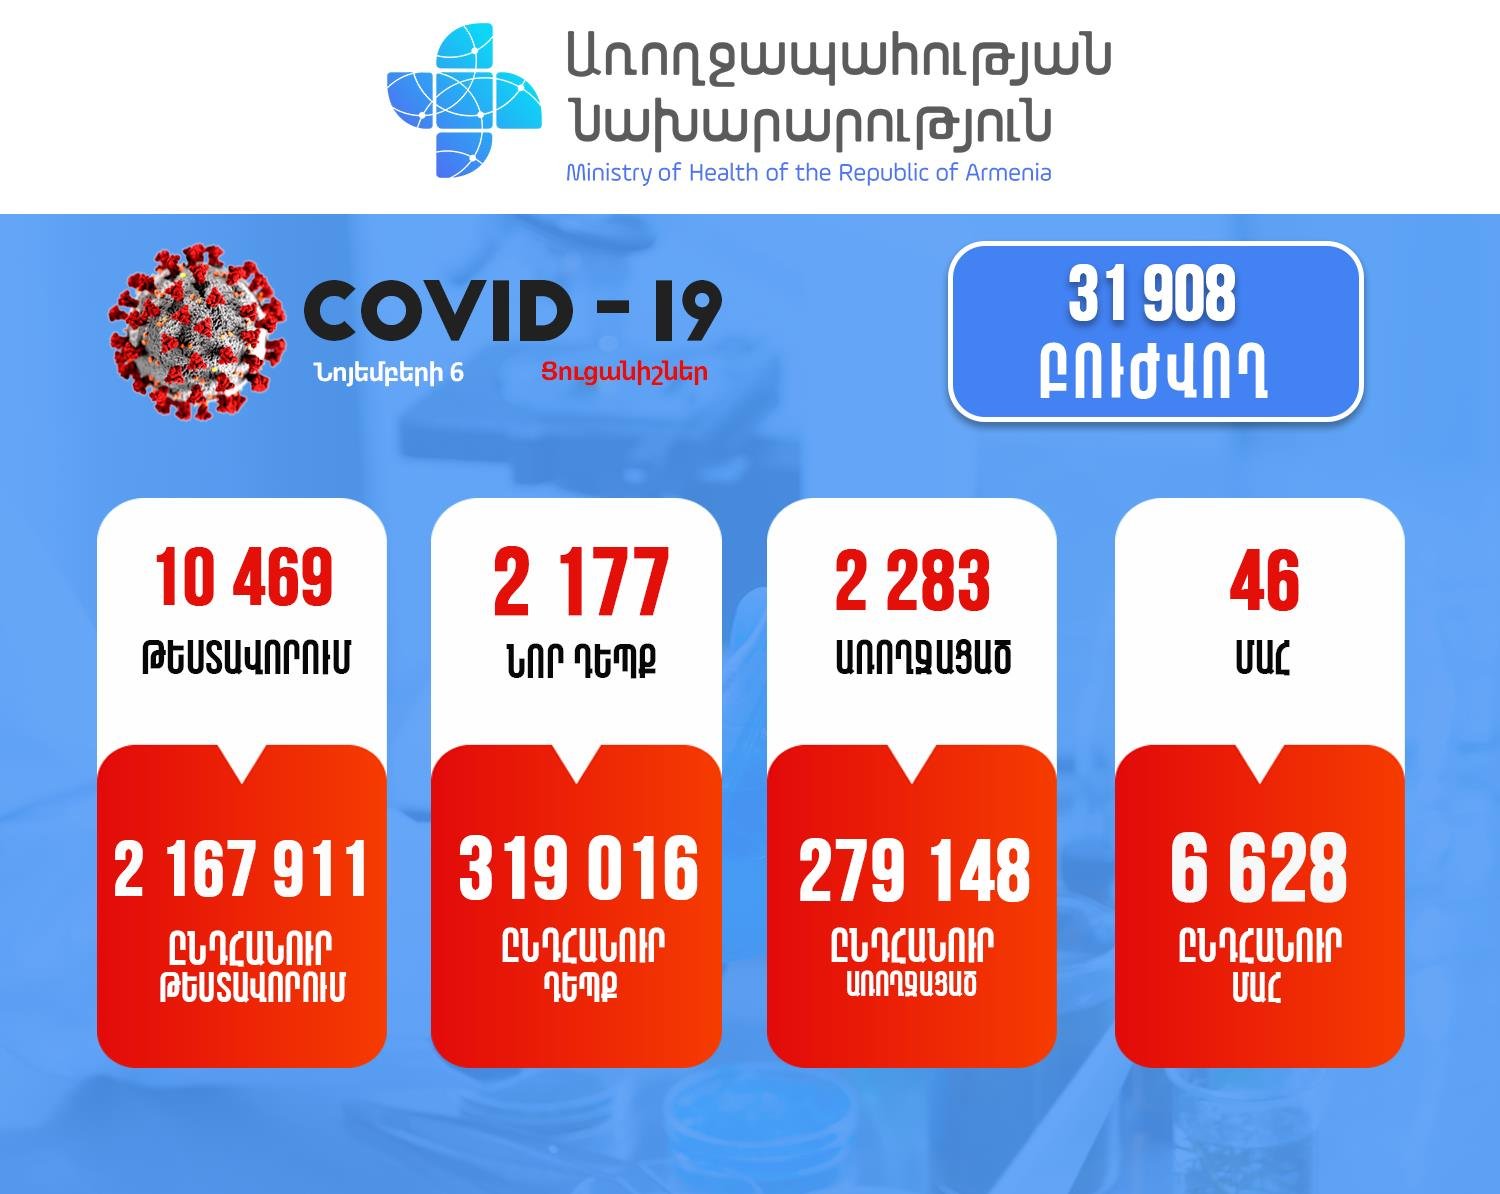 2177 նոր դեպք, 46 մահ. կորոնավիրուսային իրավիճակը Հայաստանում